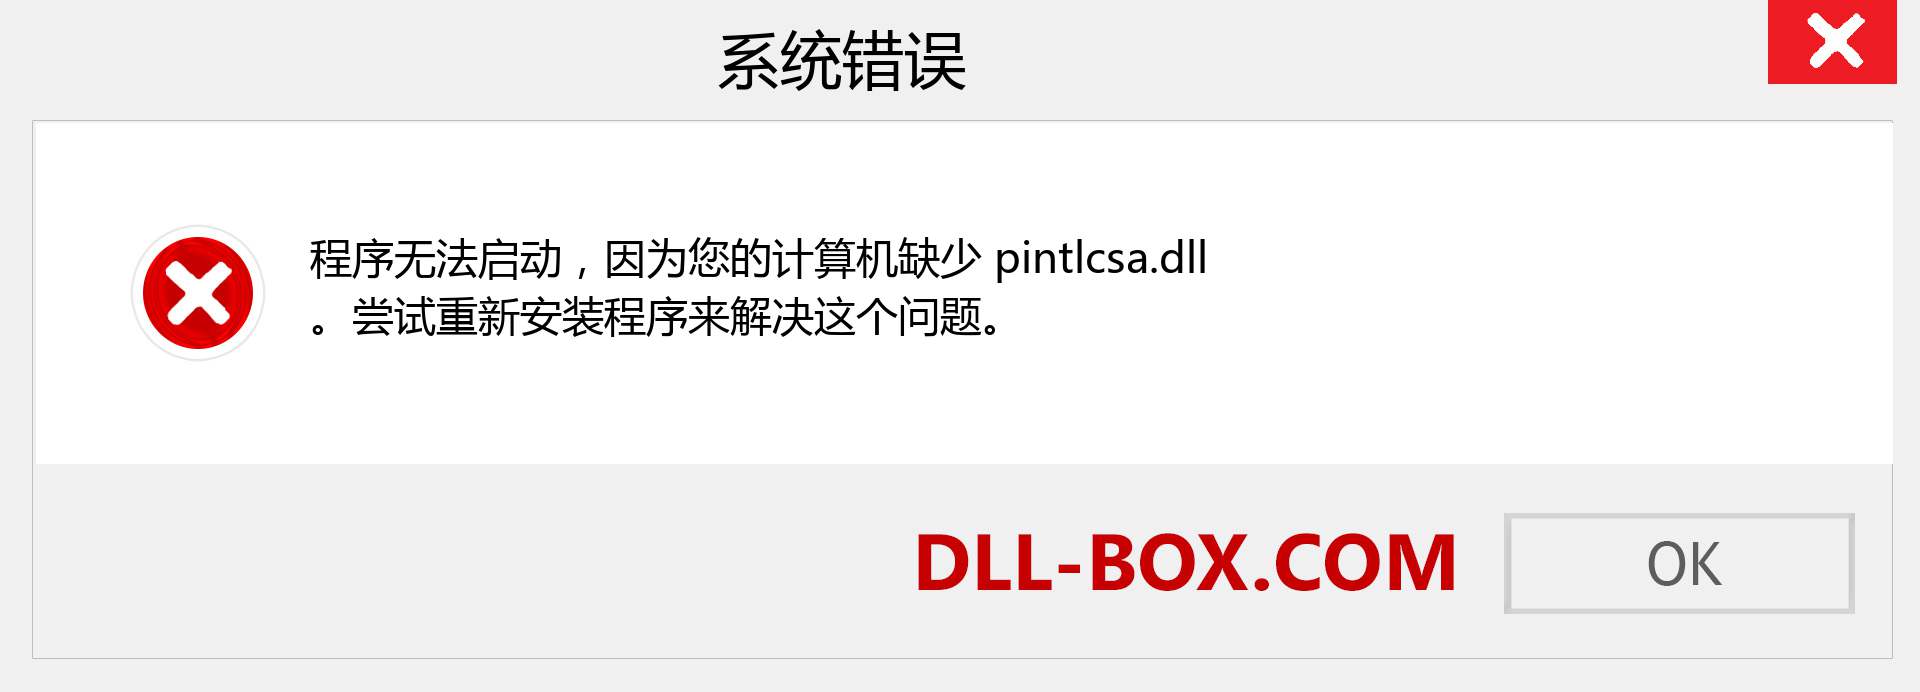 pintlcsa.dll 文件丢失？。 适用于 Windows 7、8、10 的下载 - 修复 Windows、照片、图像上的 pintlcsa dll 丢失错误